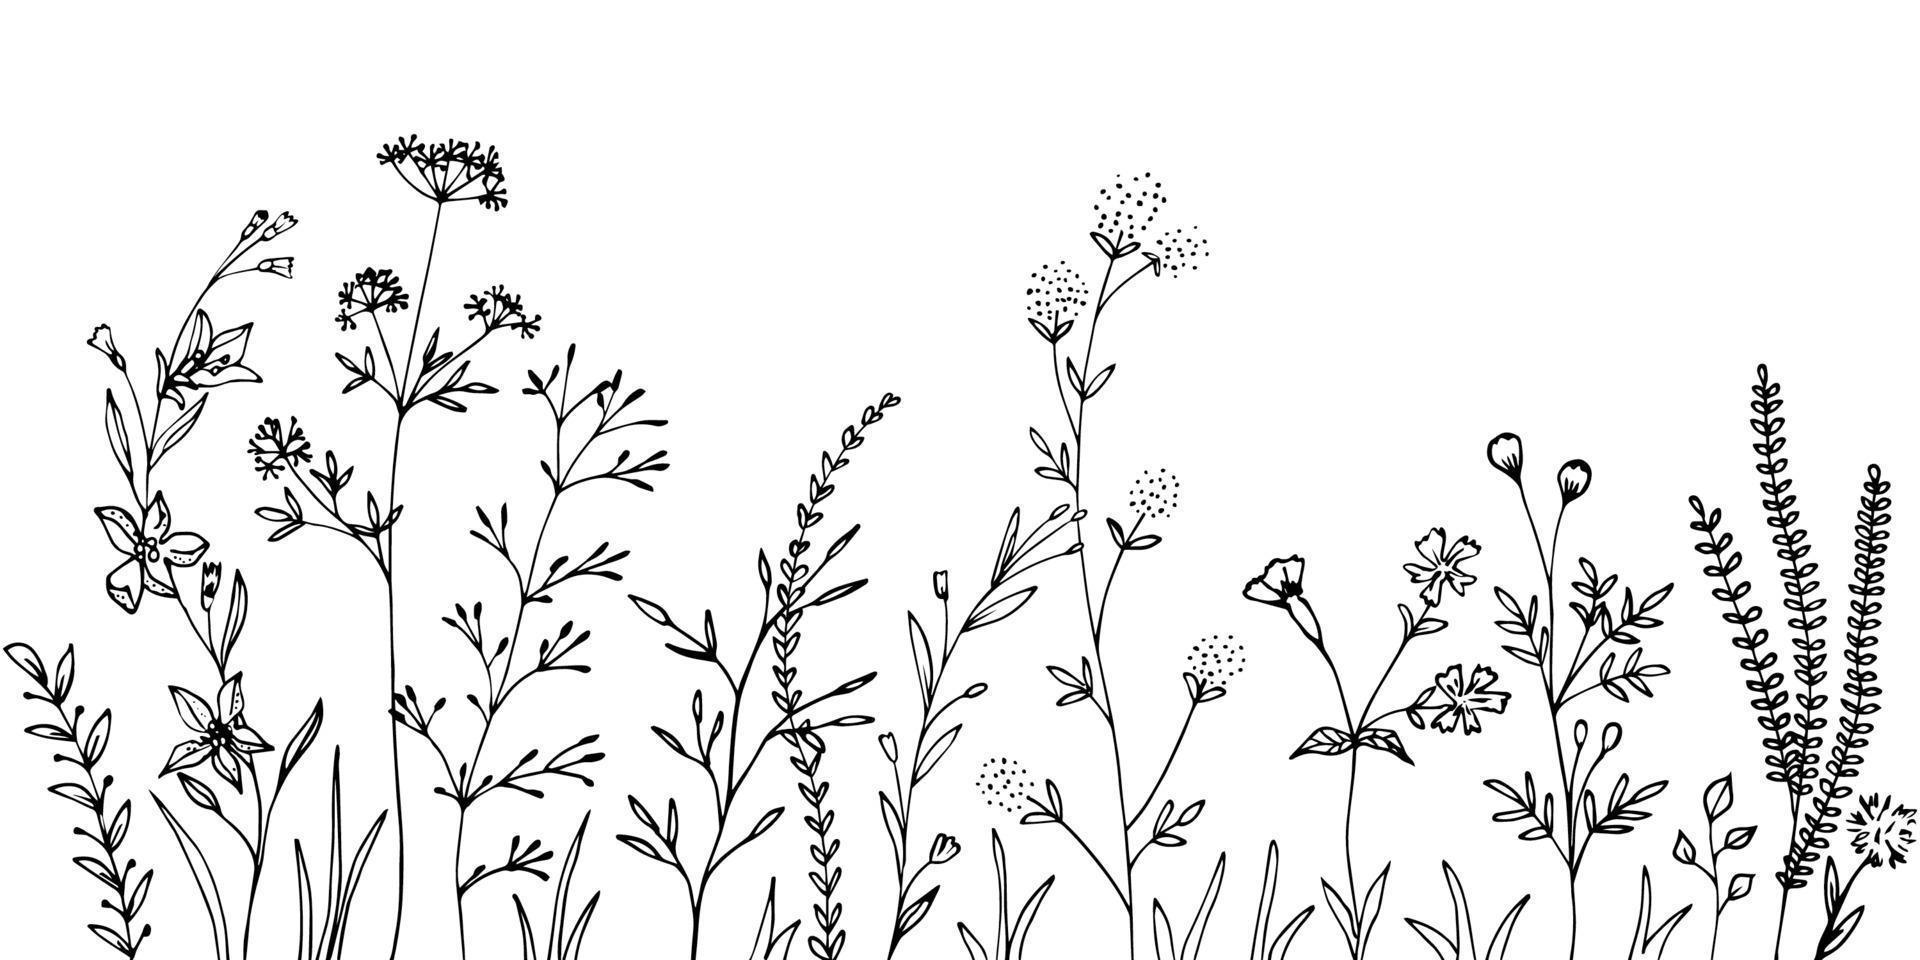 siluetas negras de hierba, flores y hierbas. vector